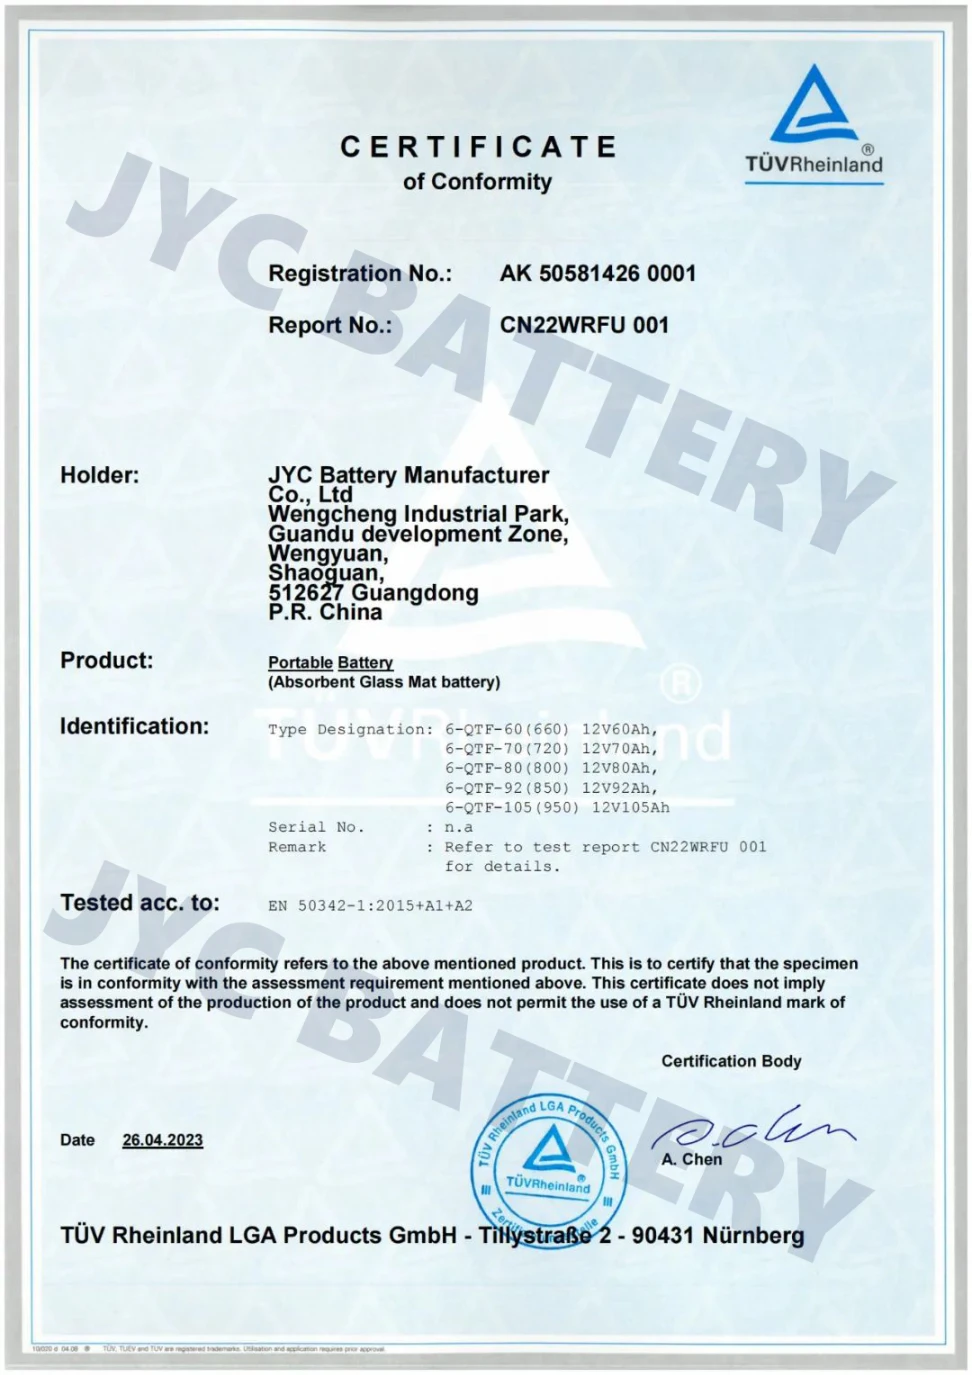 JYC Start-Stop Car Battery Certified to EN 50342 -- JYC Battery